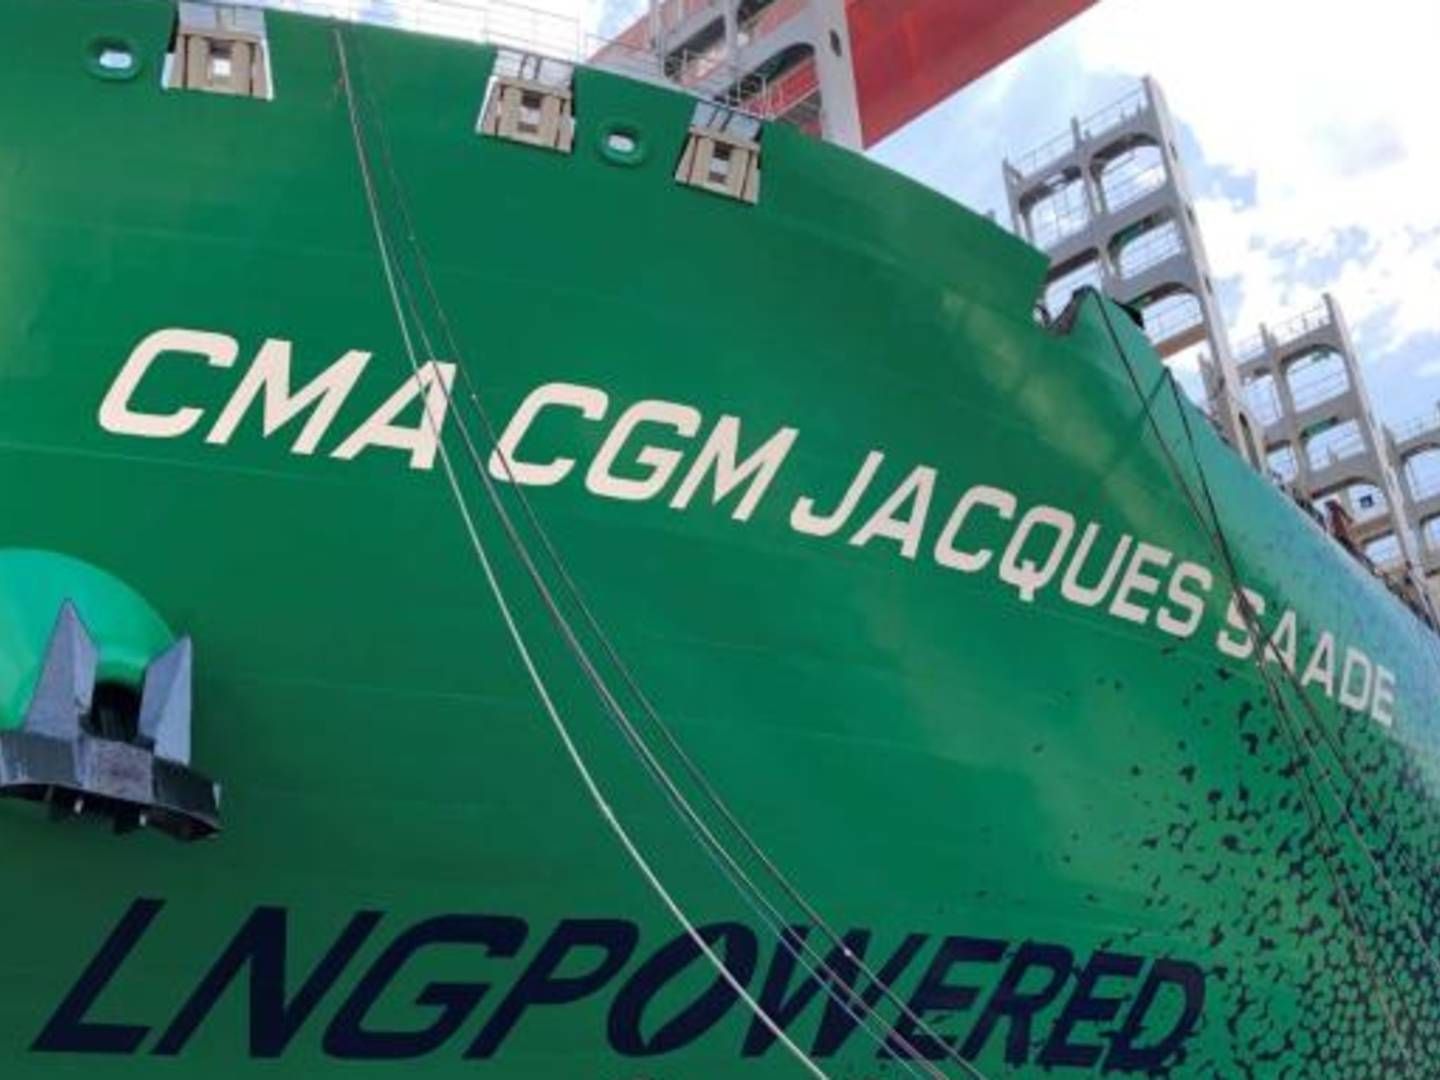 Franske CMA CGM satser stort på at bygge dual fuel containerskibe, der kan sejle på både LNG eller heavy fuel. | Foto: PR/CMA CGM